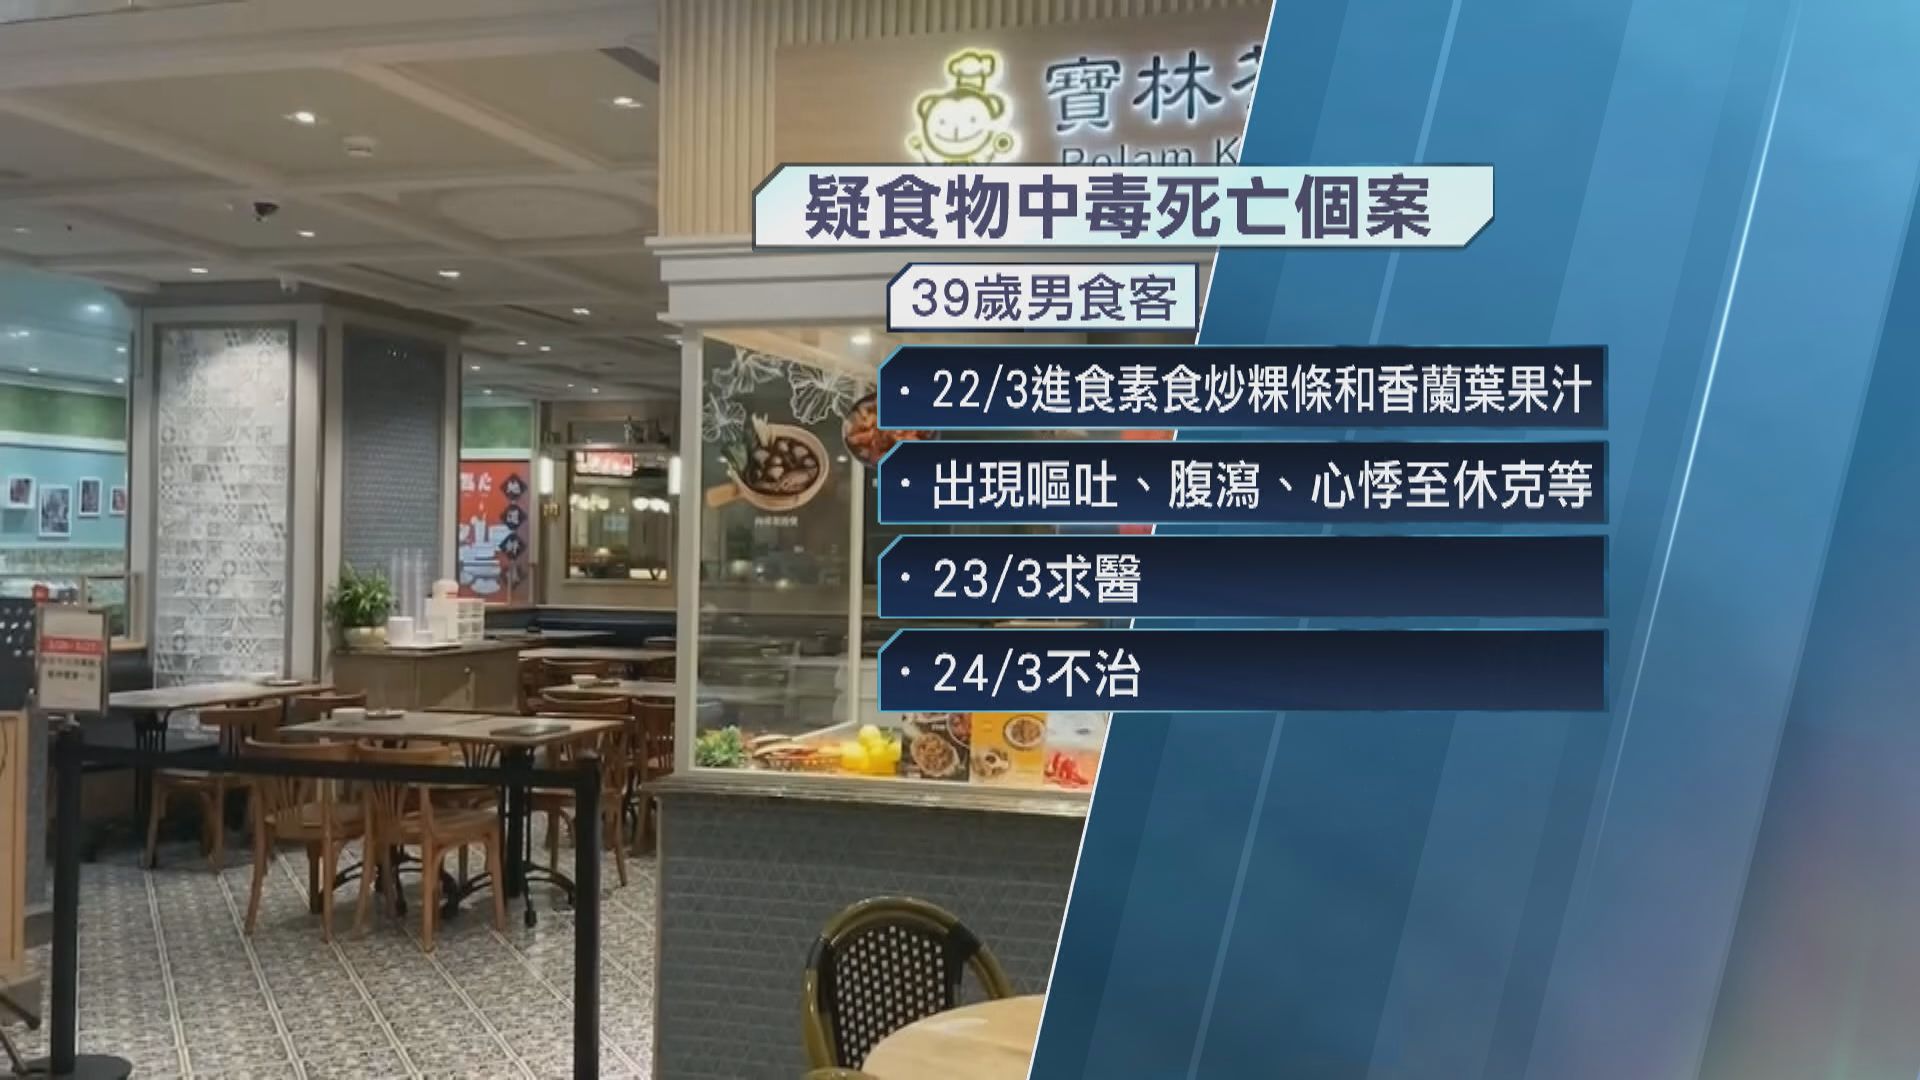 台北一素食餐廳疑爆嚴重食物中毒事件 增至兩死 所有台北分店停業